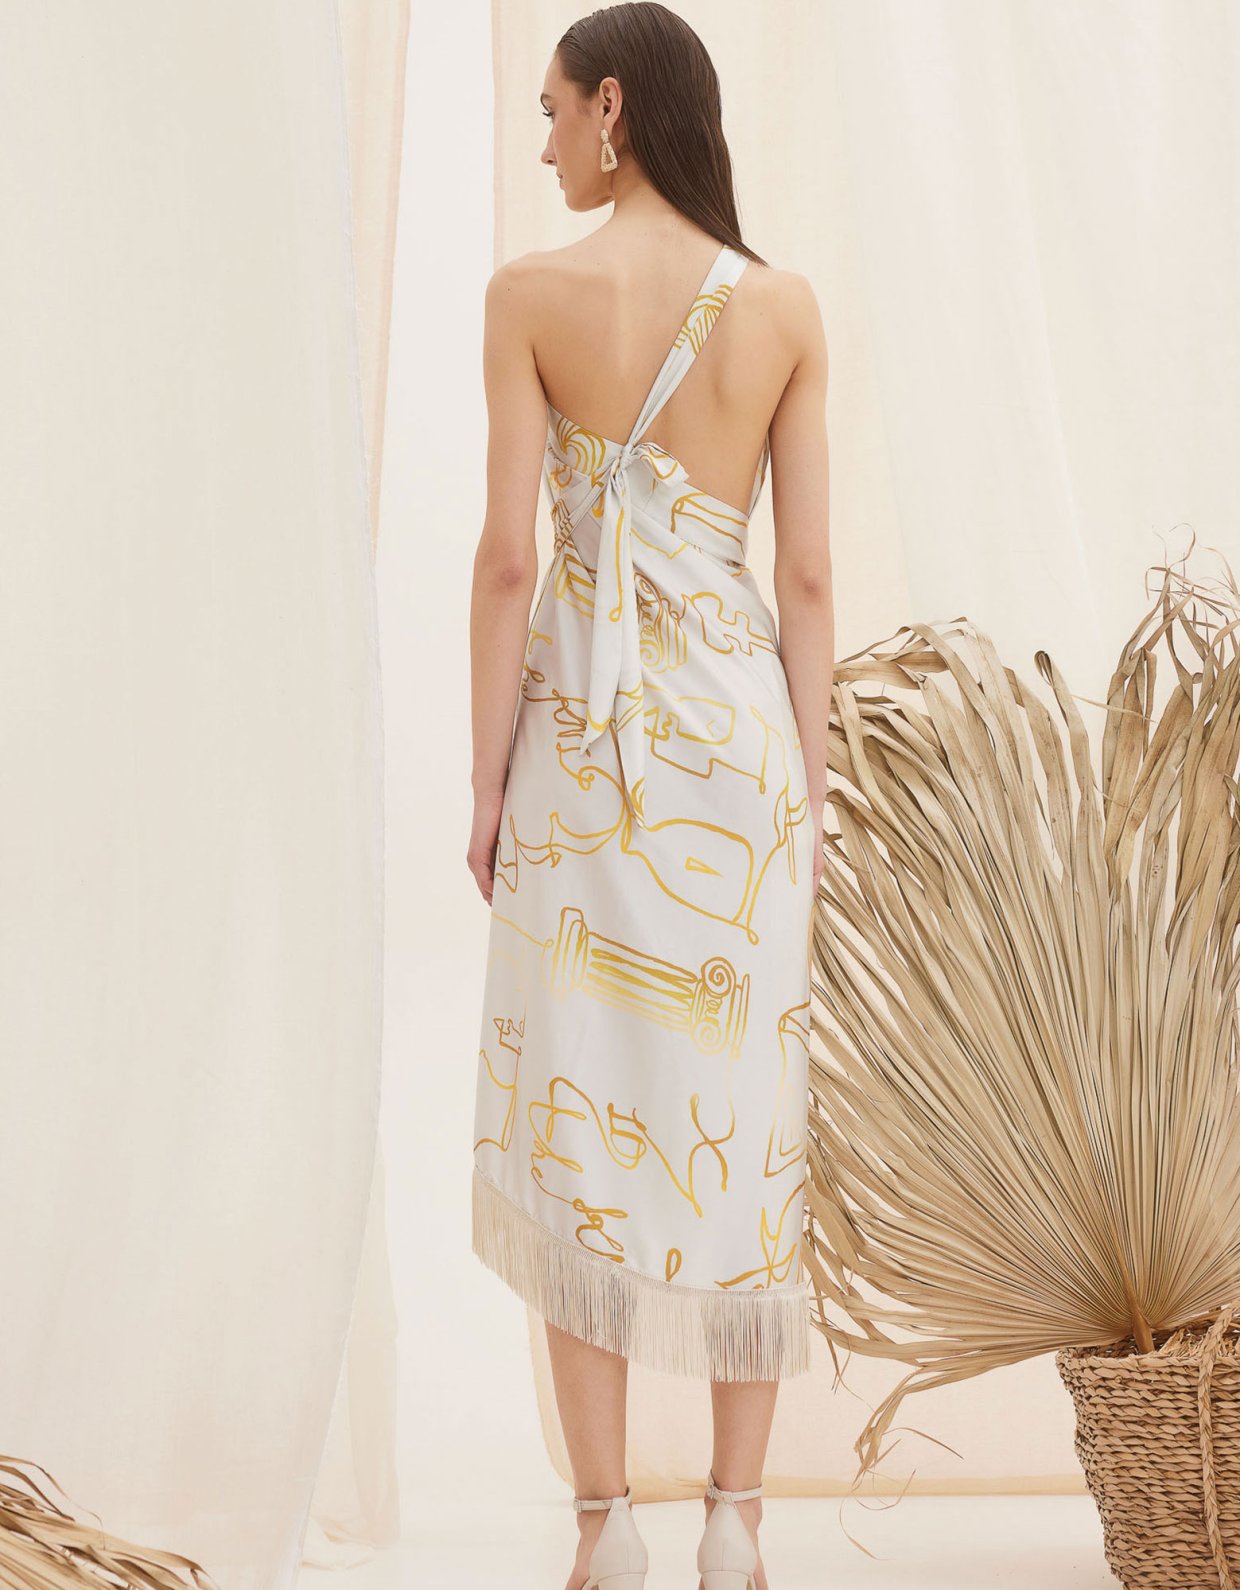 The Knl's Aphrodite midi dress-skirt print off white-gold